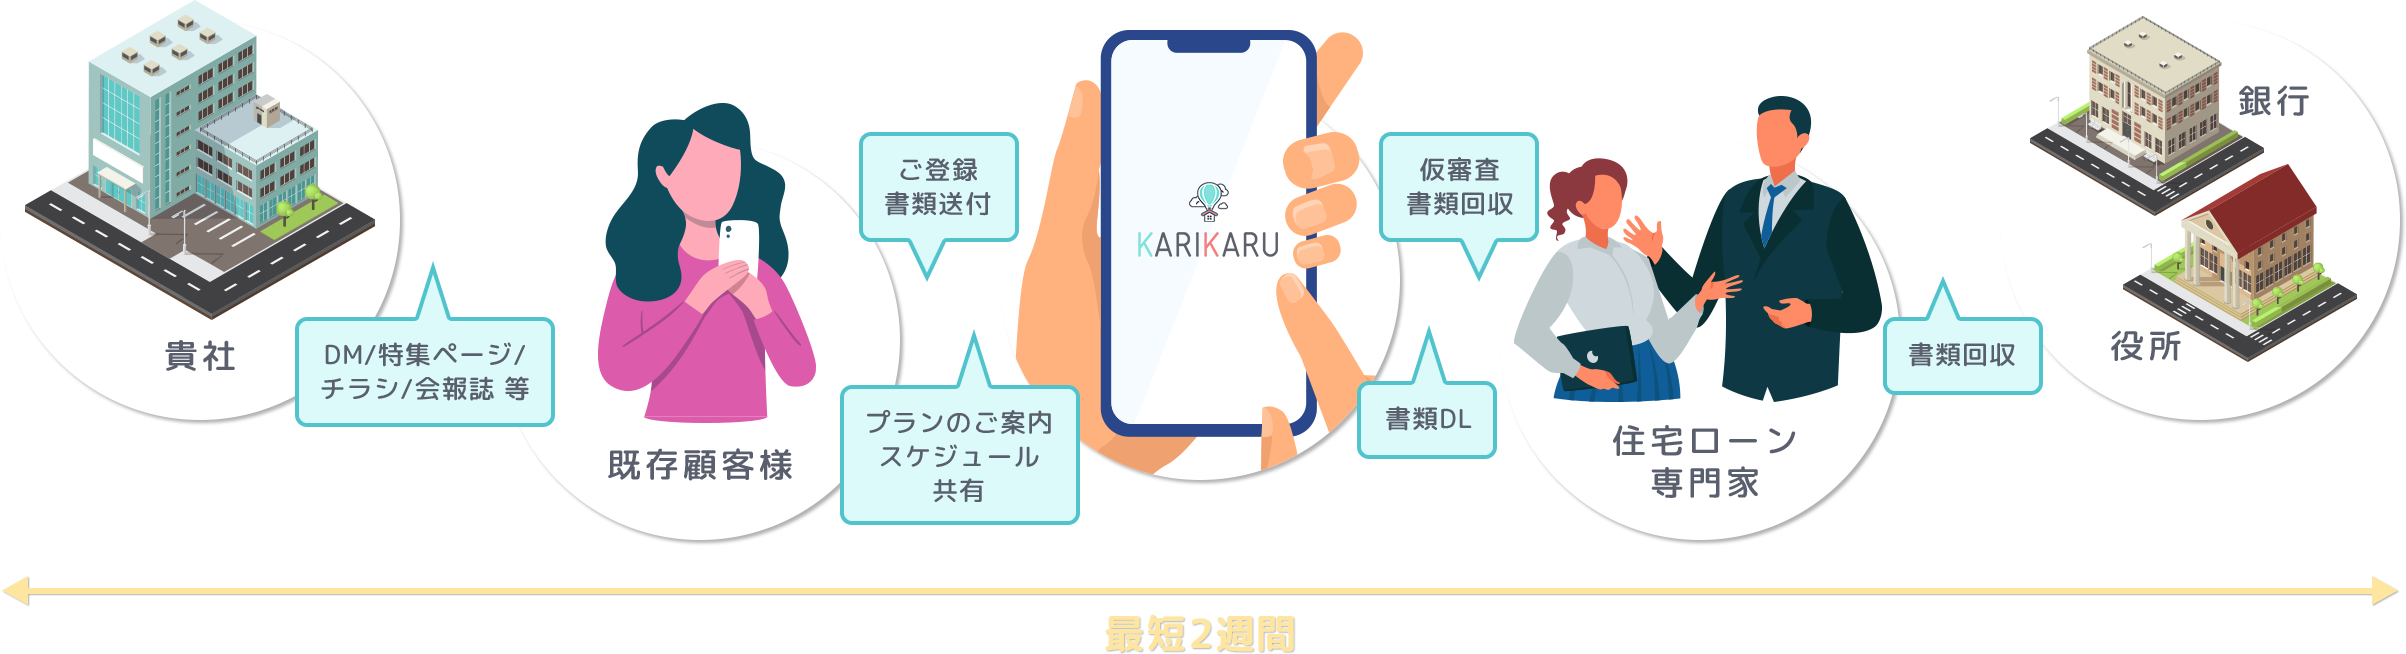 KARIKARUの仕組み